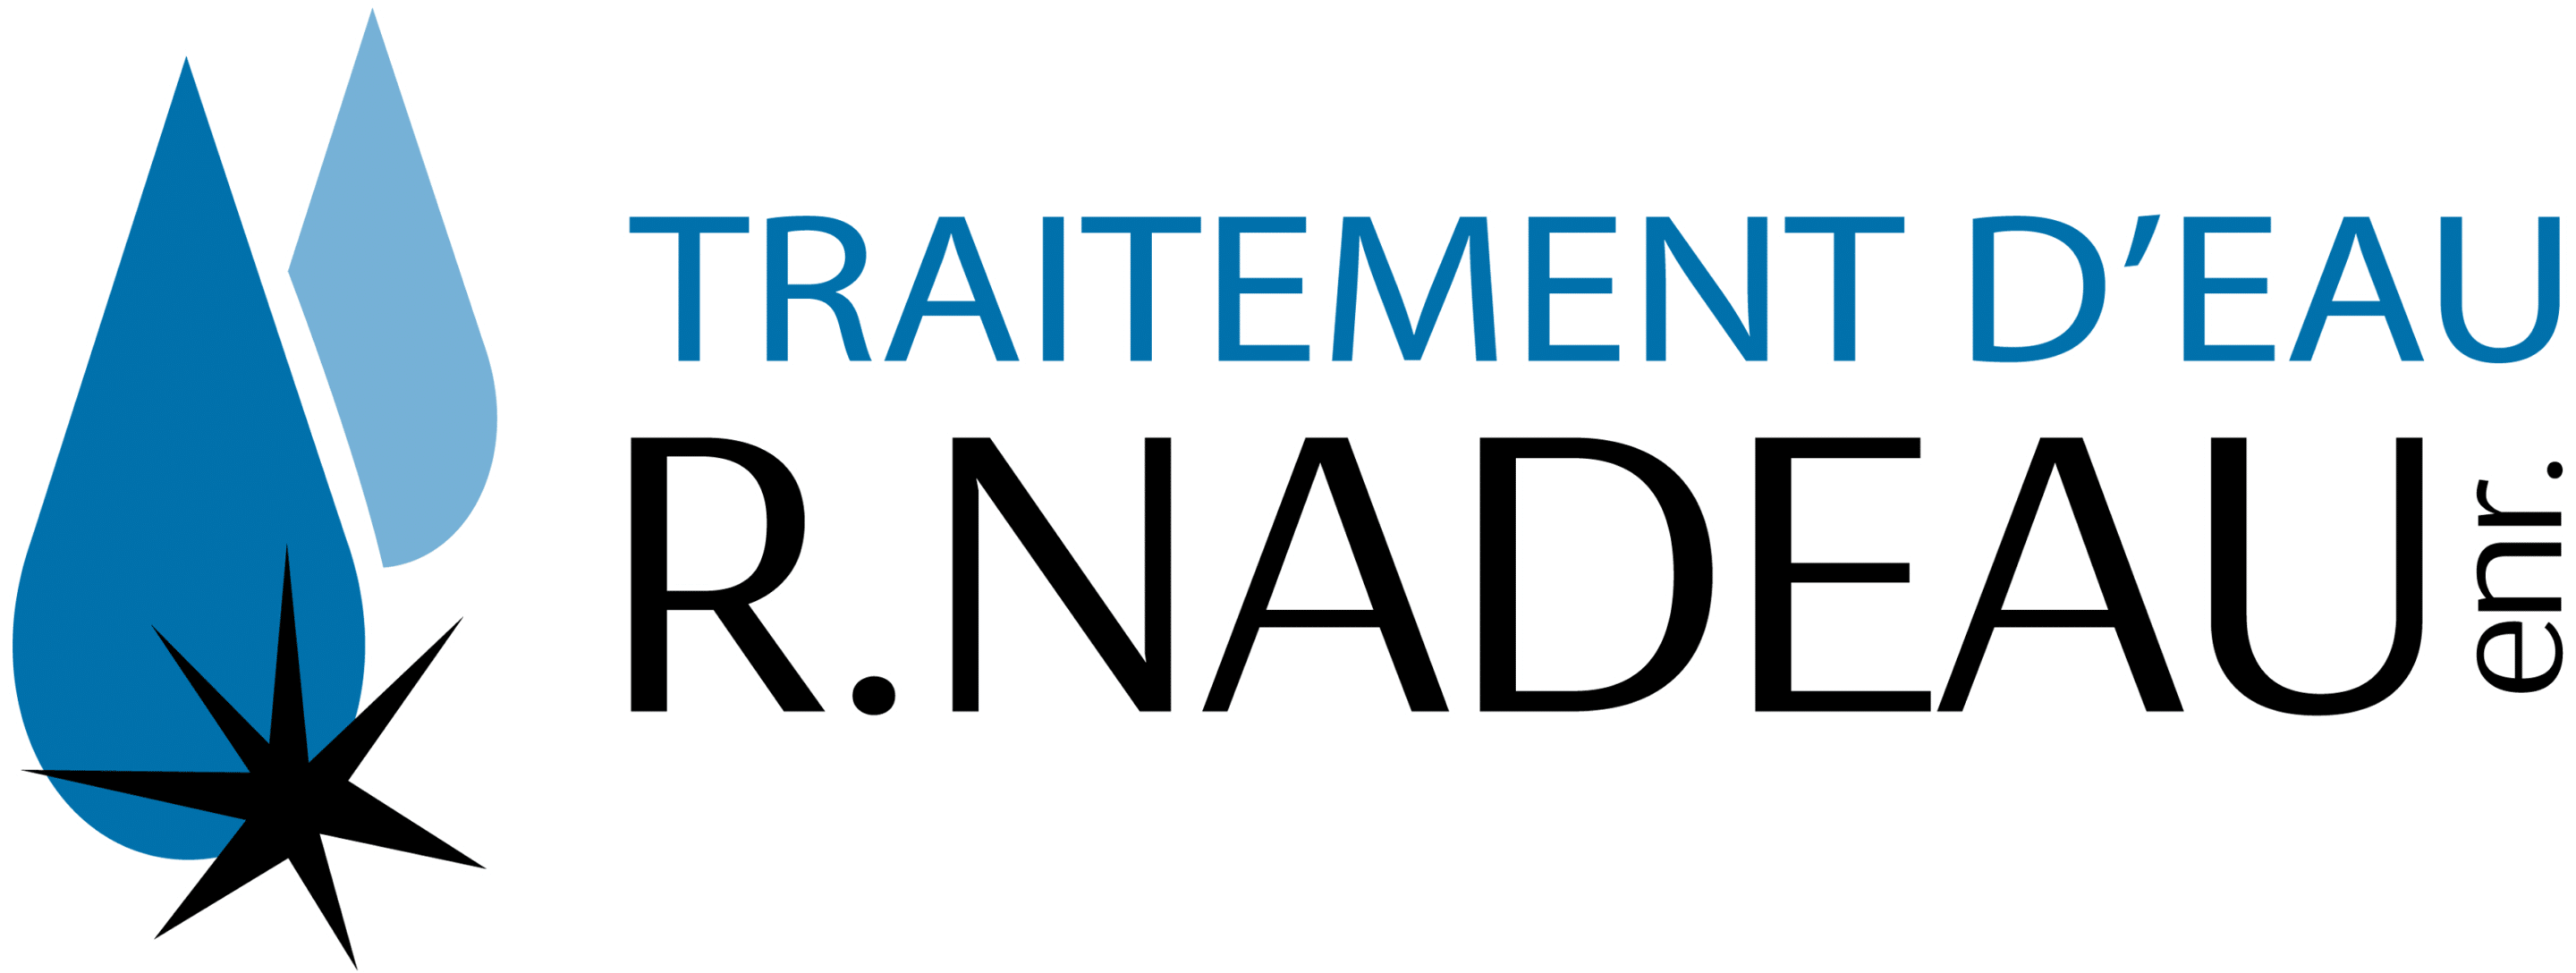 Traitement d'eau R. Nadeau, Logo, Contour blanc